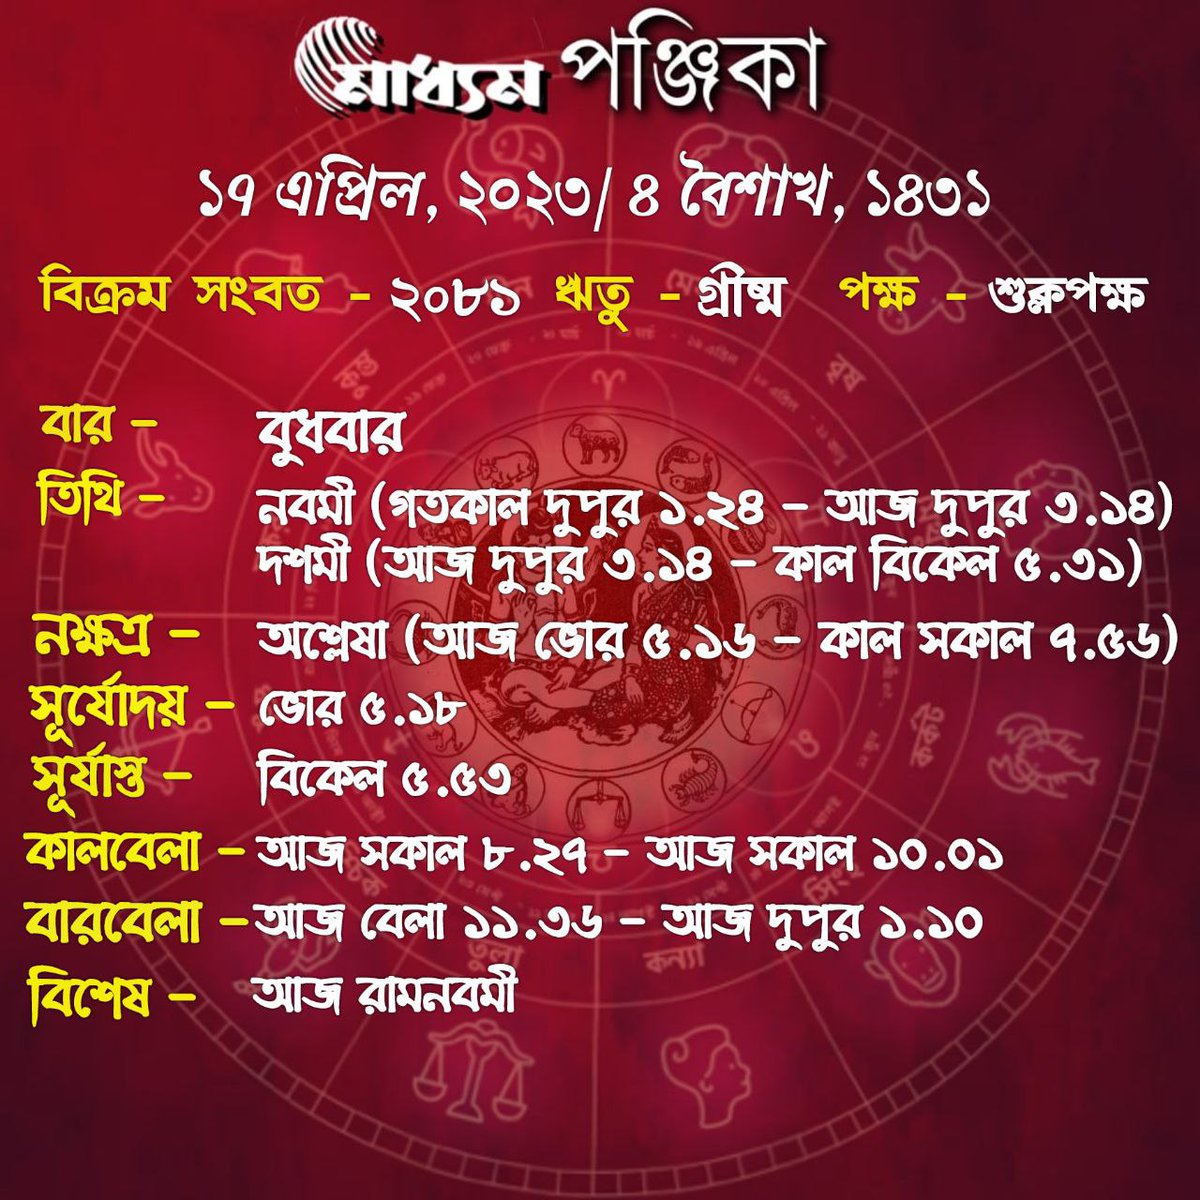 #BengaliPanjika #BanglaPanjika #Banglanews #madhyom @MadhyomBangla